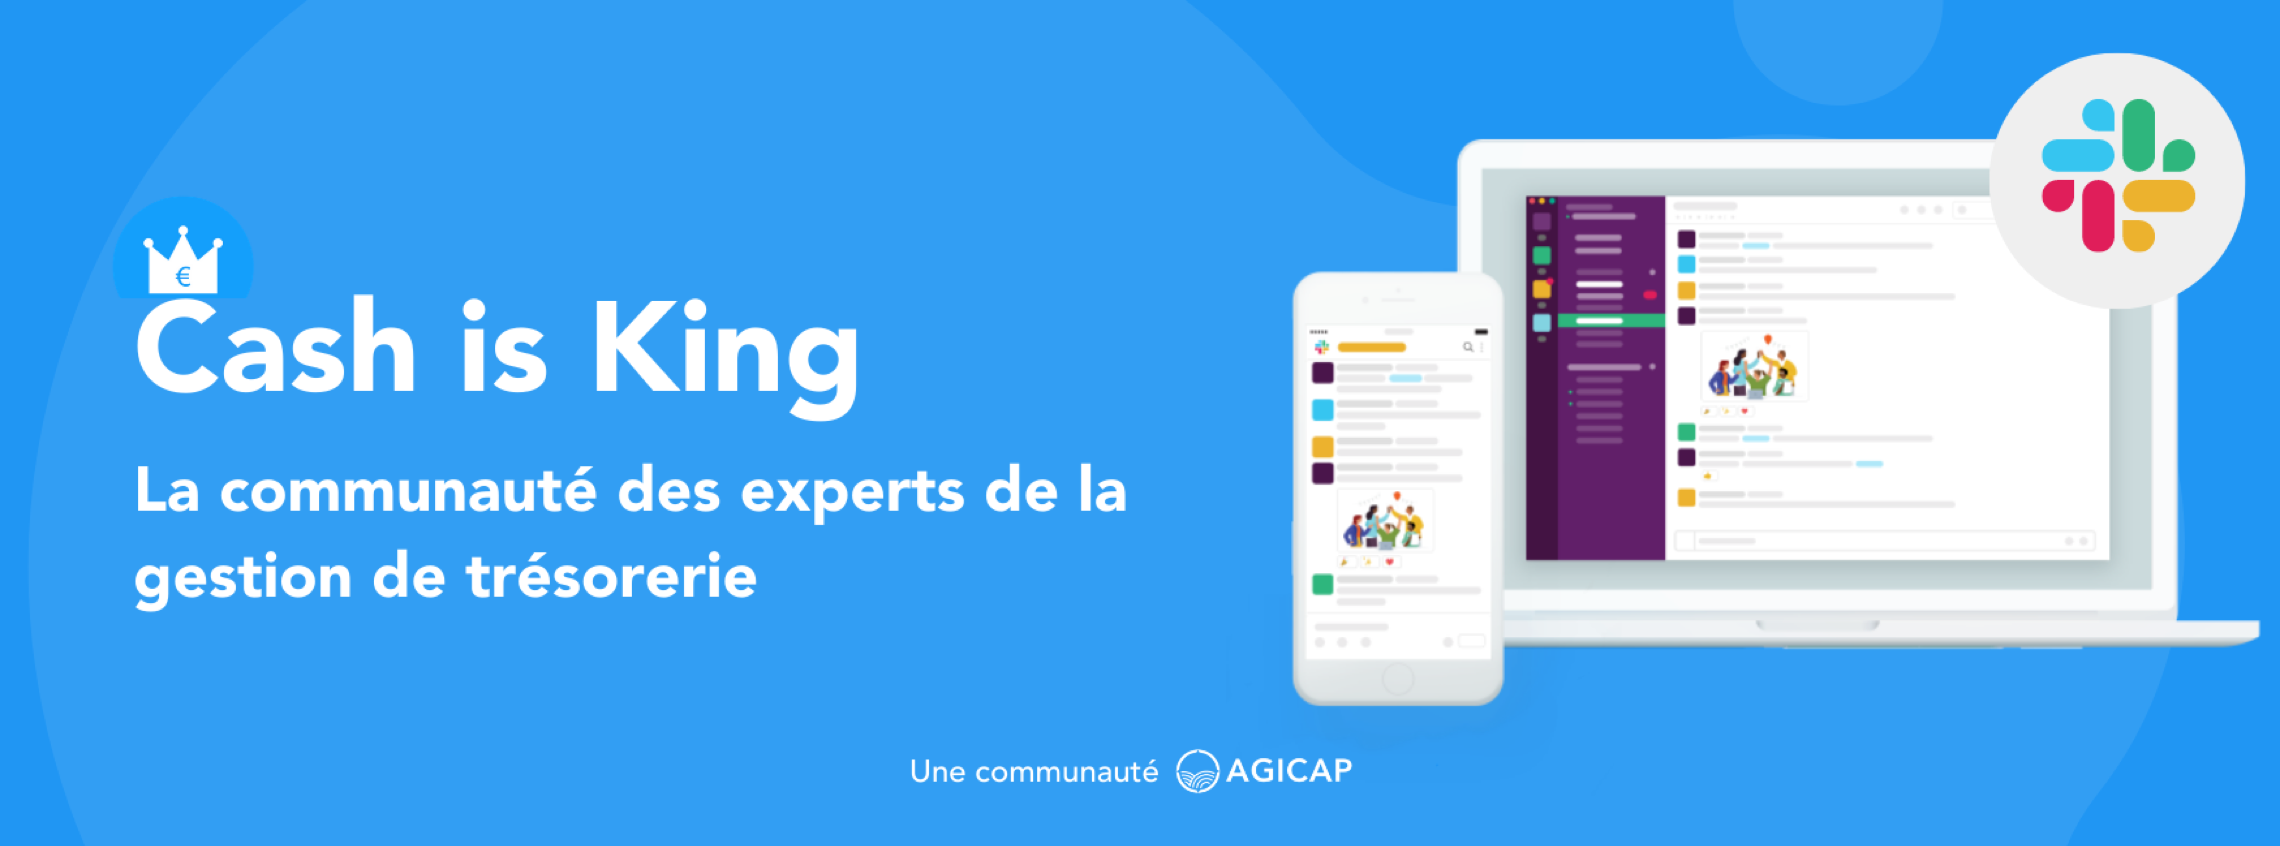 Agicap lance une plateforme sur Slack pour échanger sur les difficultés de trésorerie